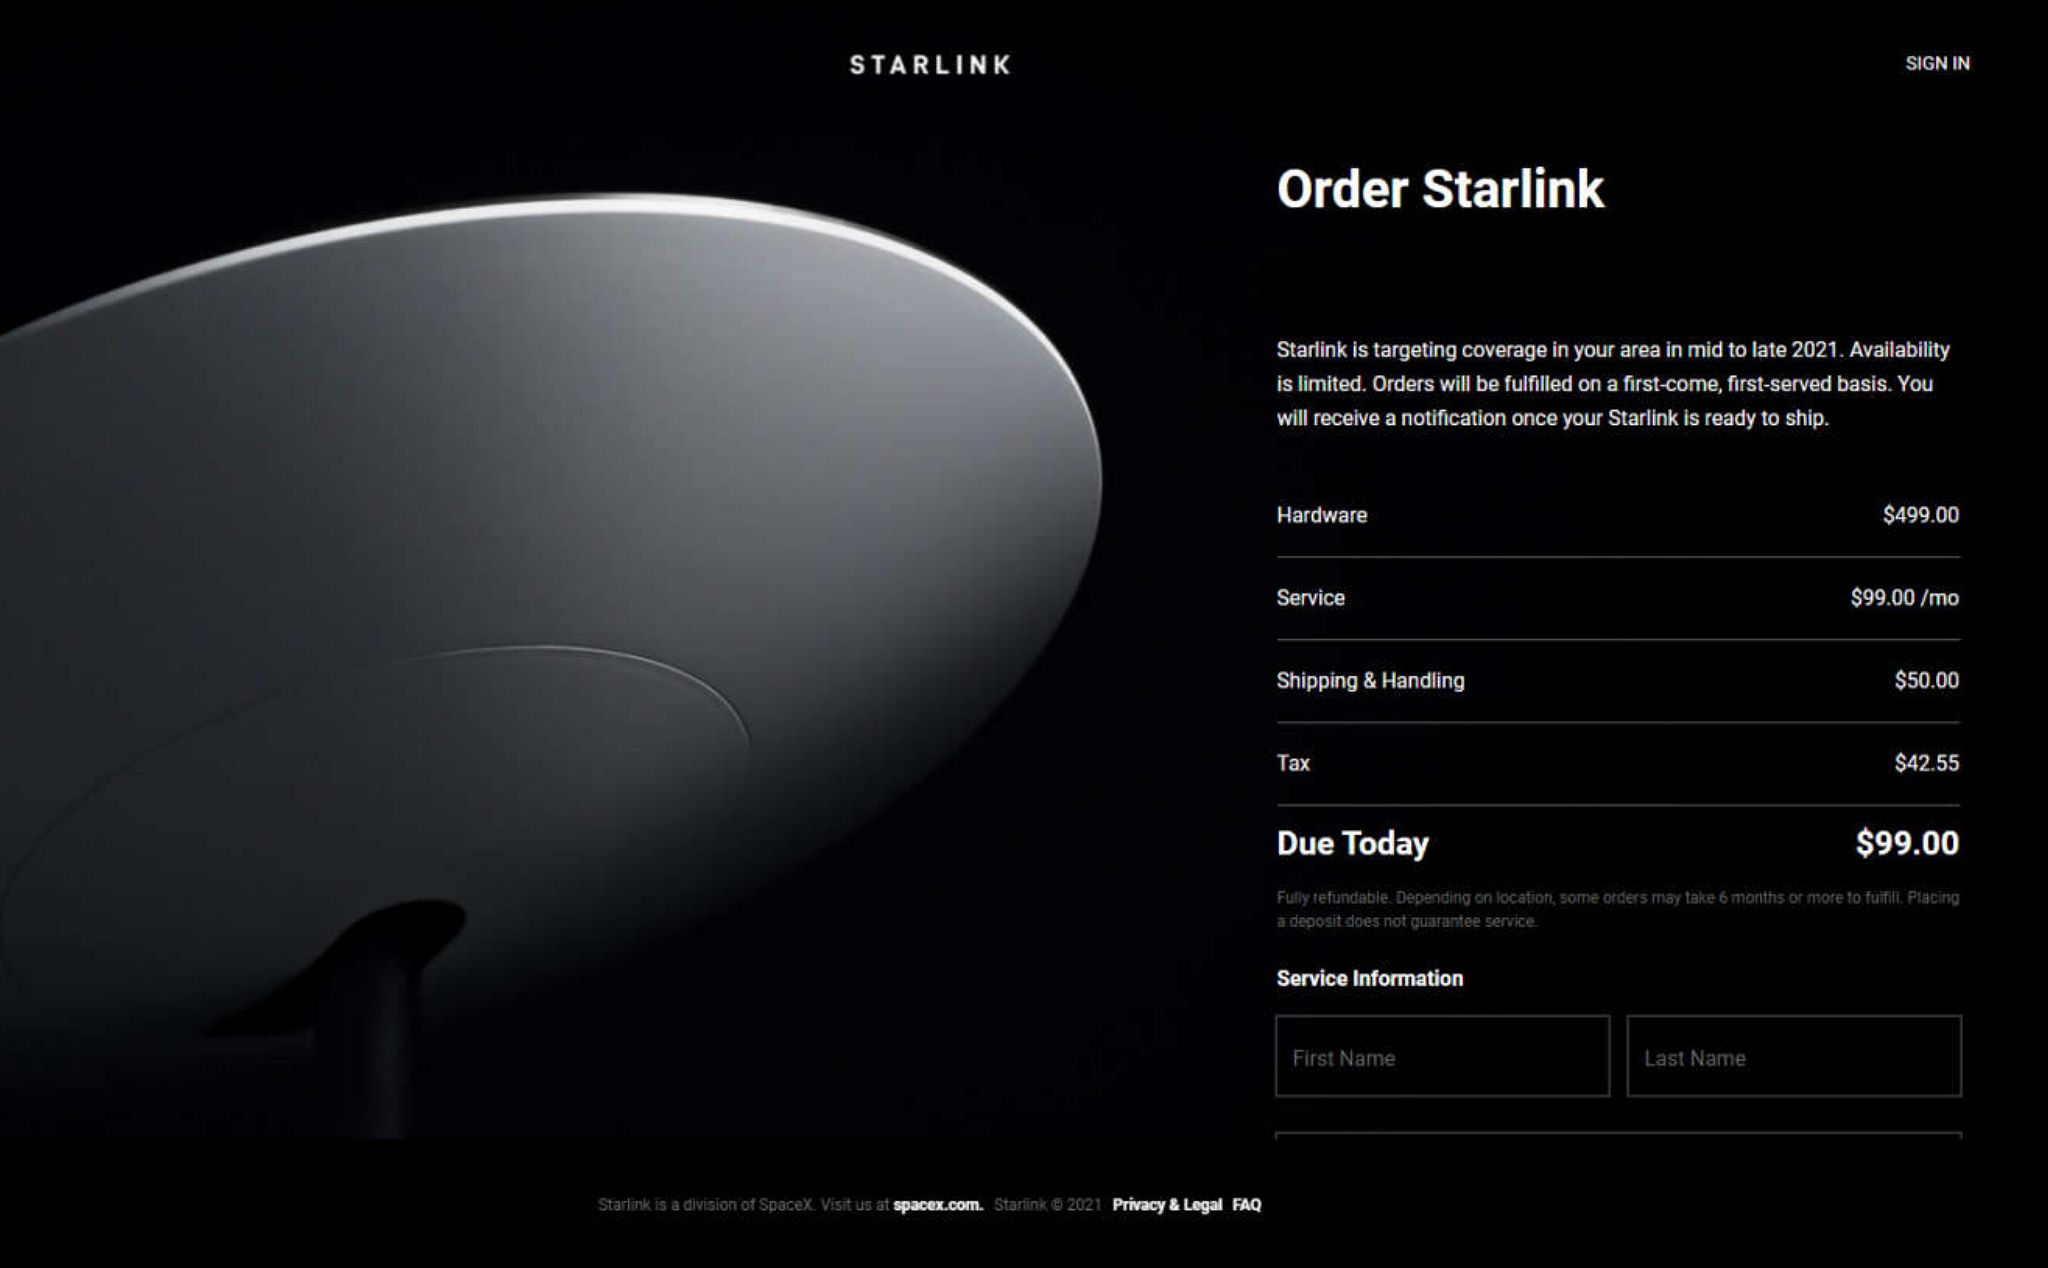 Starlink chính thức cho đăng kí trước dịch vụ internet từ vệ tinh của mình